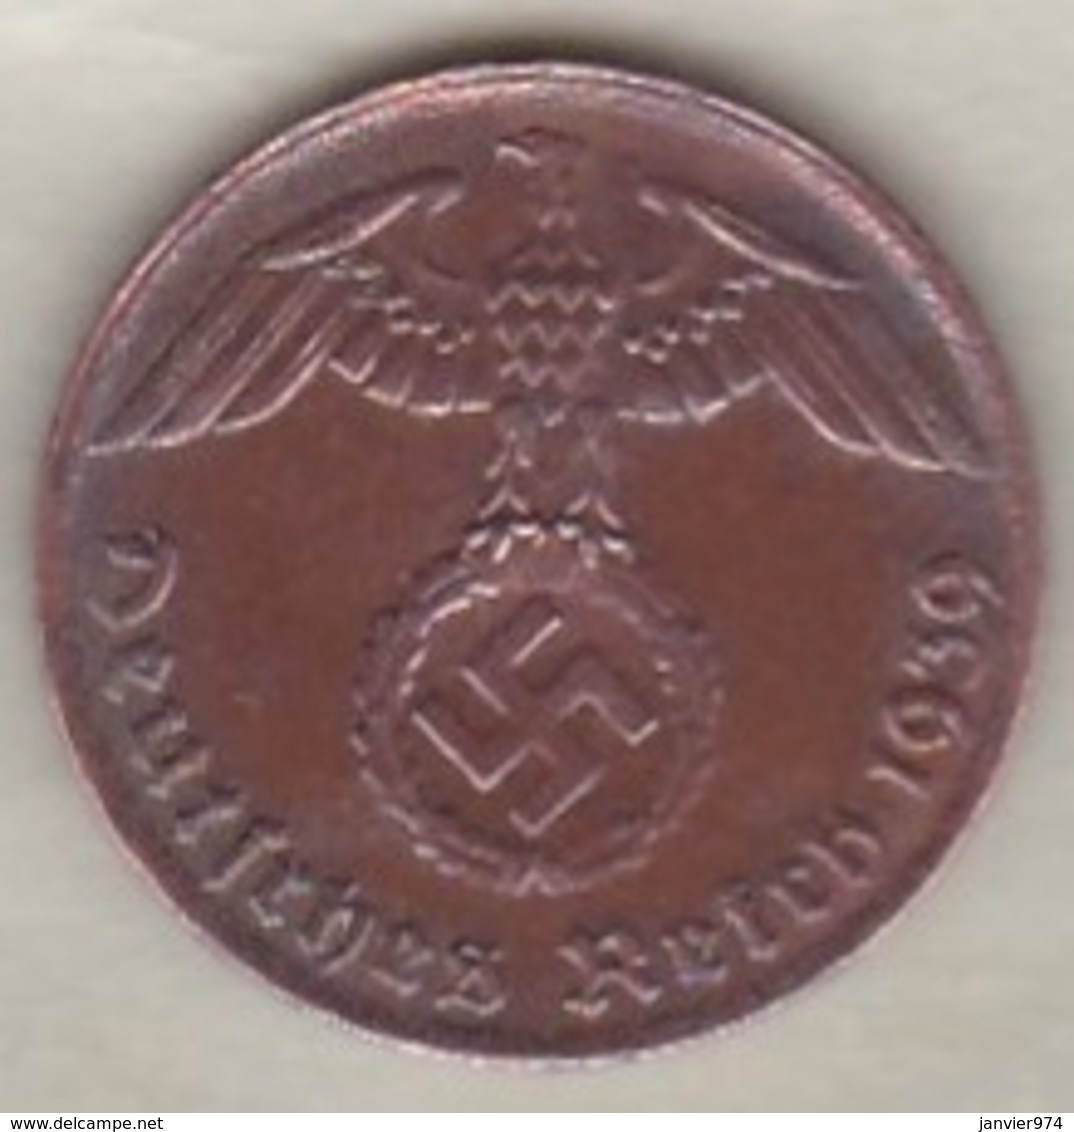 1 Reichspfennig 1939 G (KARLSRUHE)  .Bronze - 1 Reichspfennig